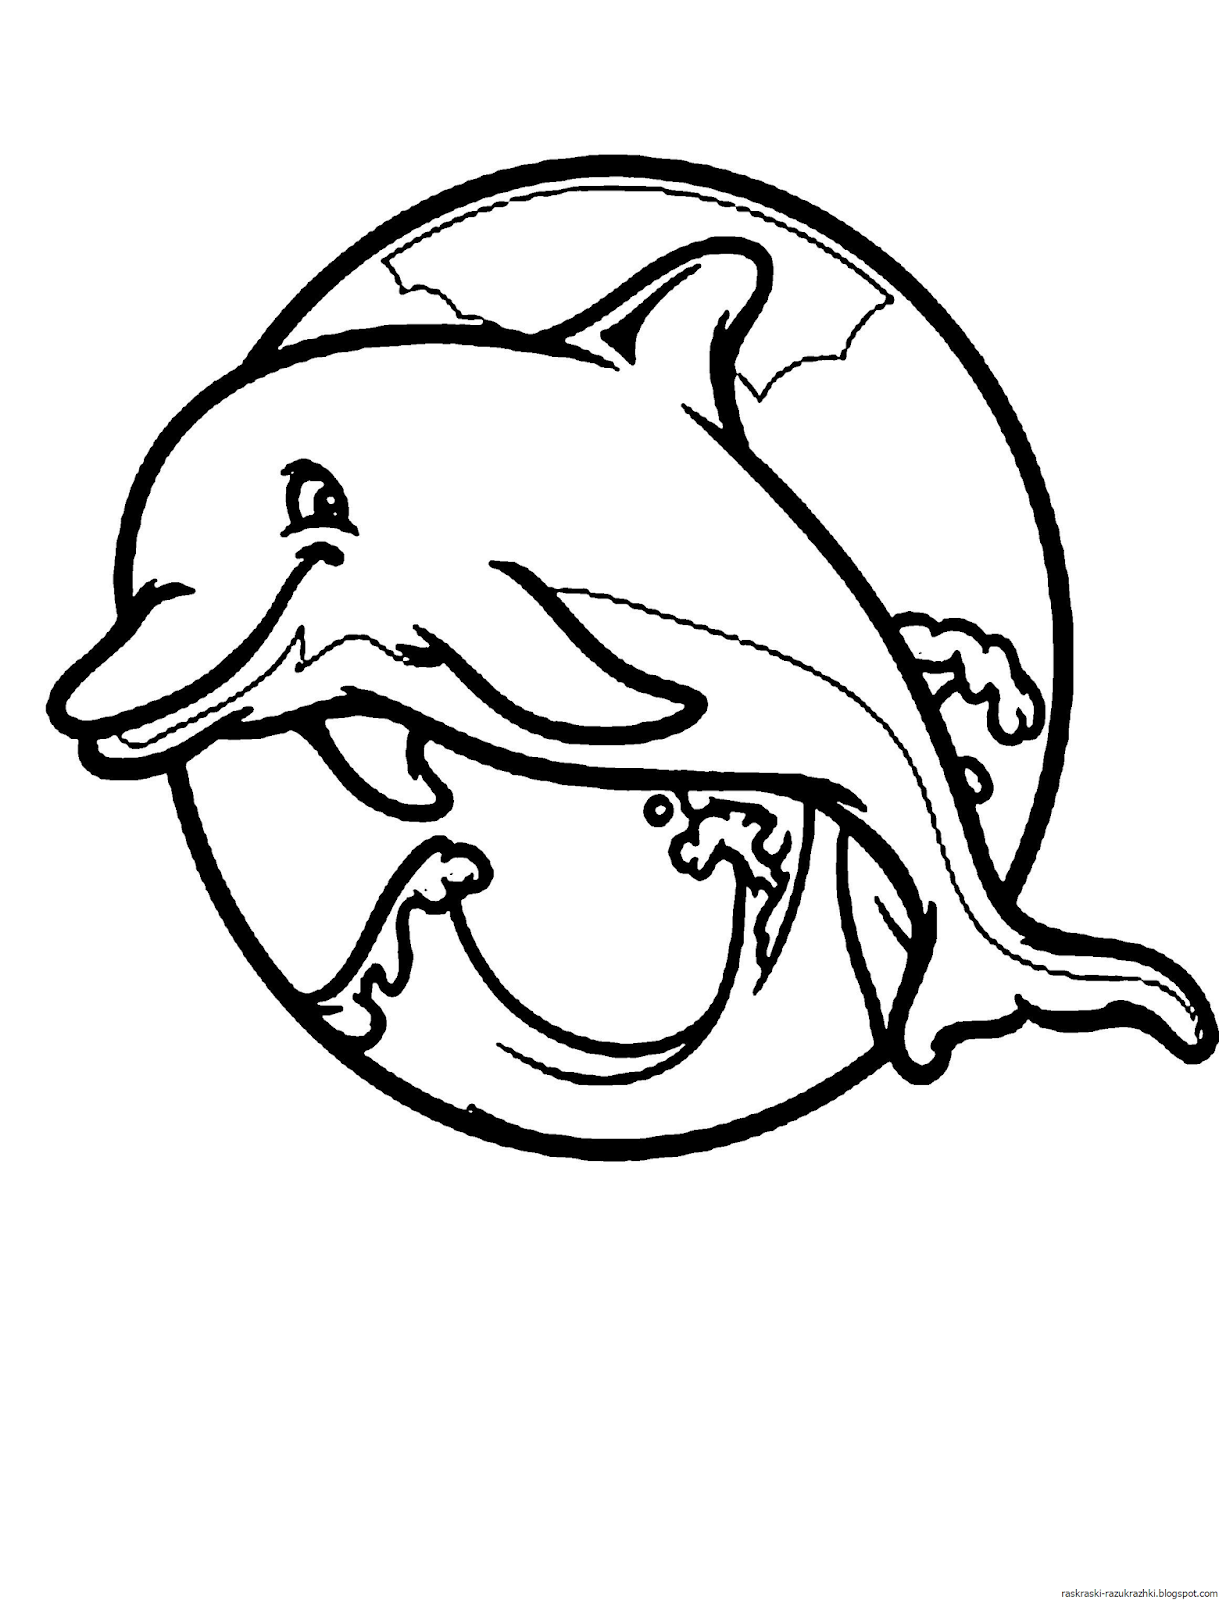 Раскраски Дельфин Антистресс – черно-белые картинки с милейшими морскими созданиями Выберите понравившиеся раскраски Дельфина Антистресс и бесплатно распечатайте их в формате А4